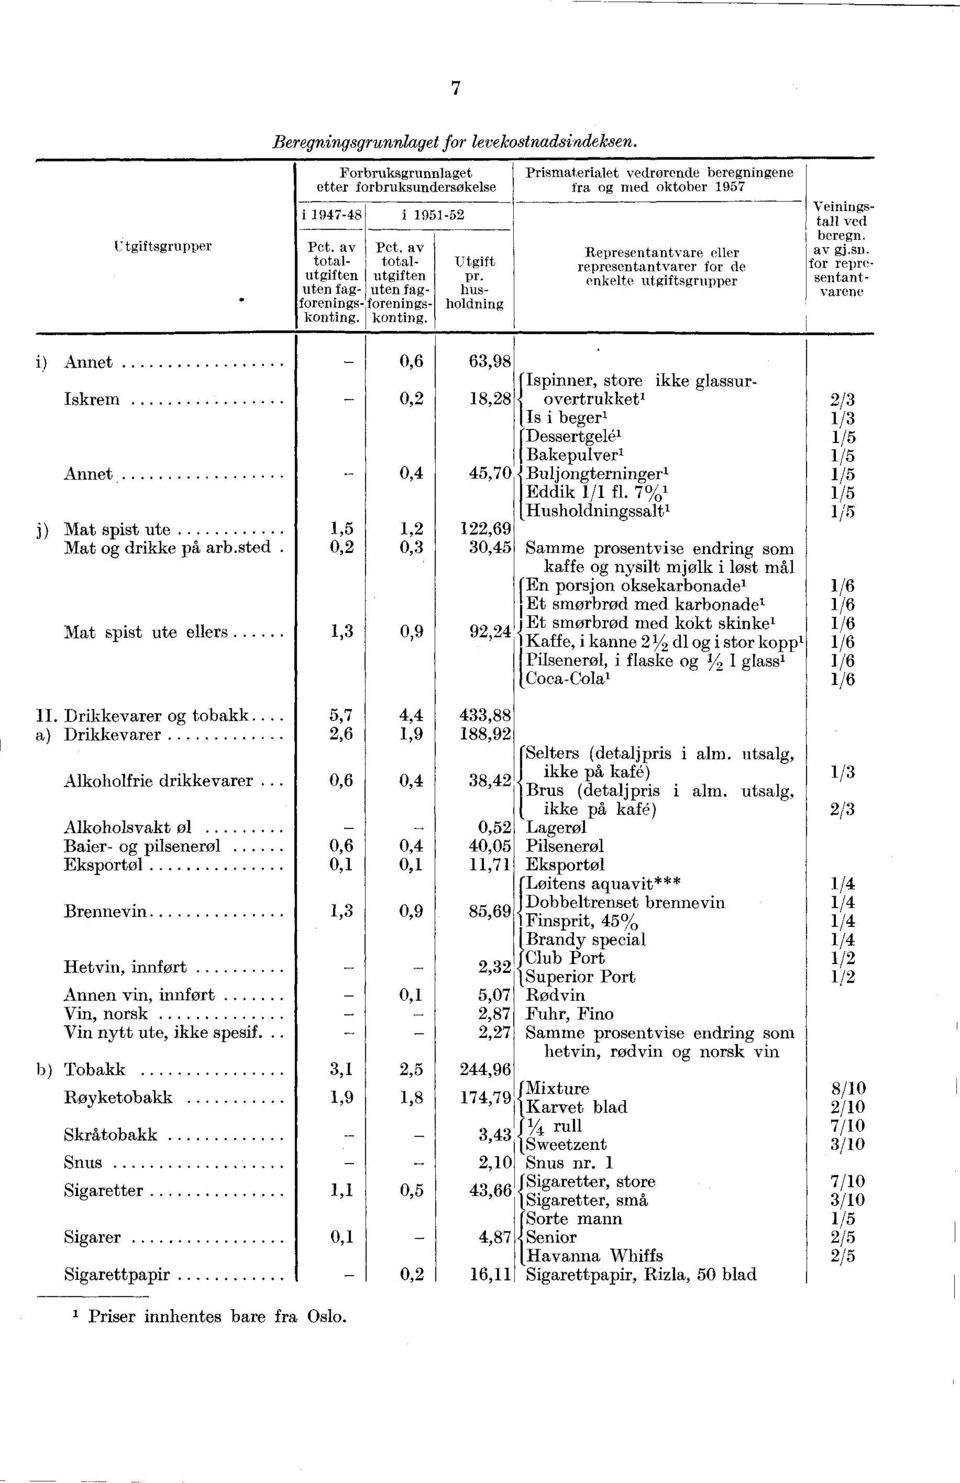 Prismaterialet vedrørende beregningene fra og med oktober 1957 Representantvare eller representantvarer for de enkelte utgiftsgrupper titgift pr. husholdning Veiningstall ved beregn. av gj.sn.